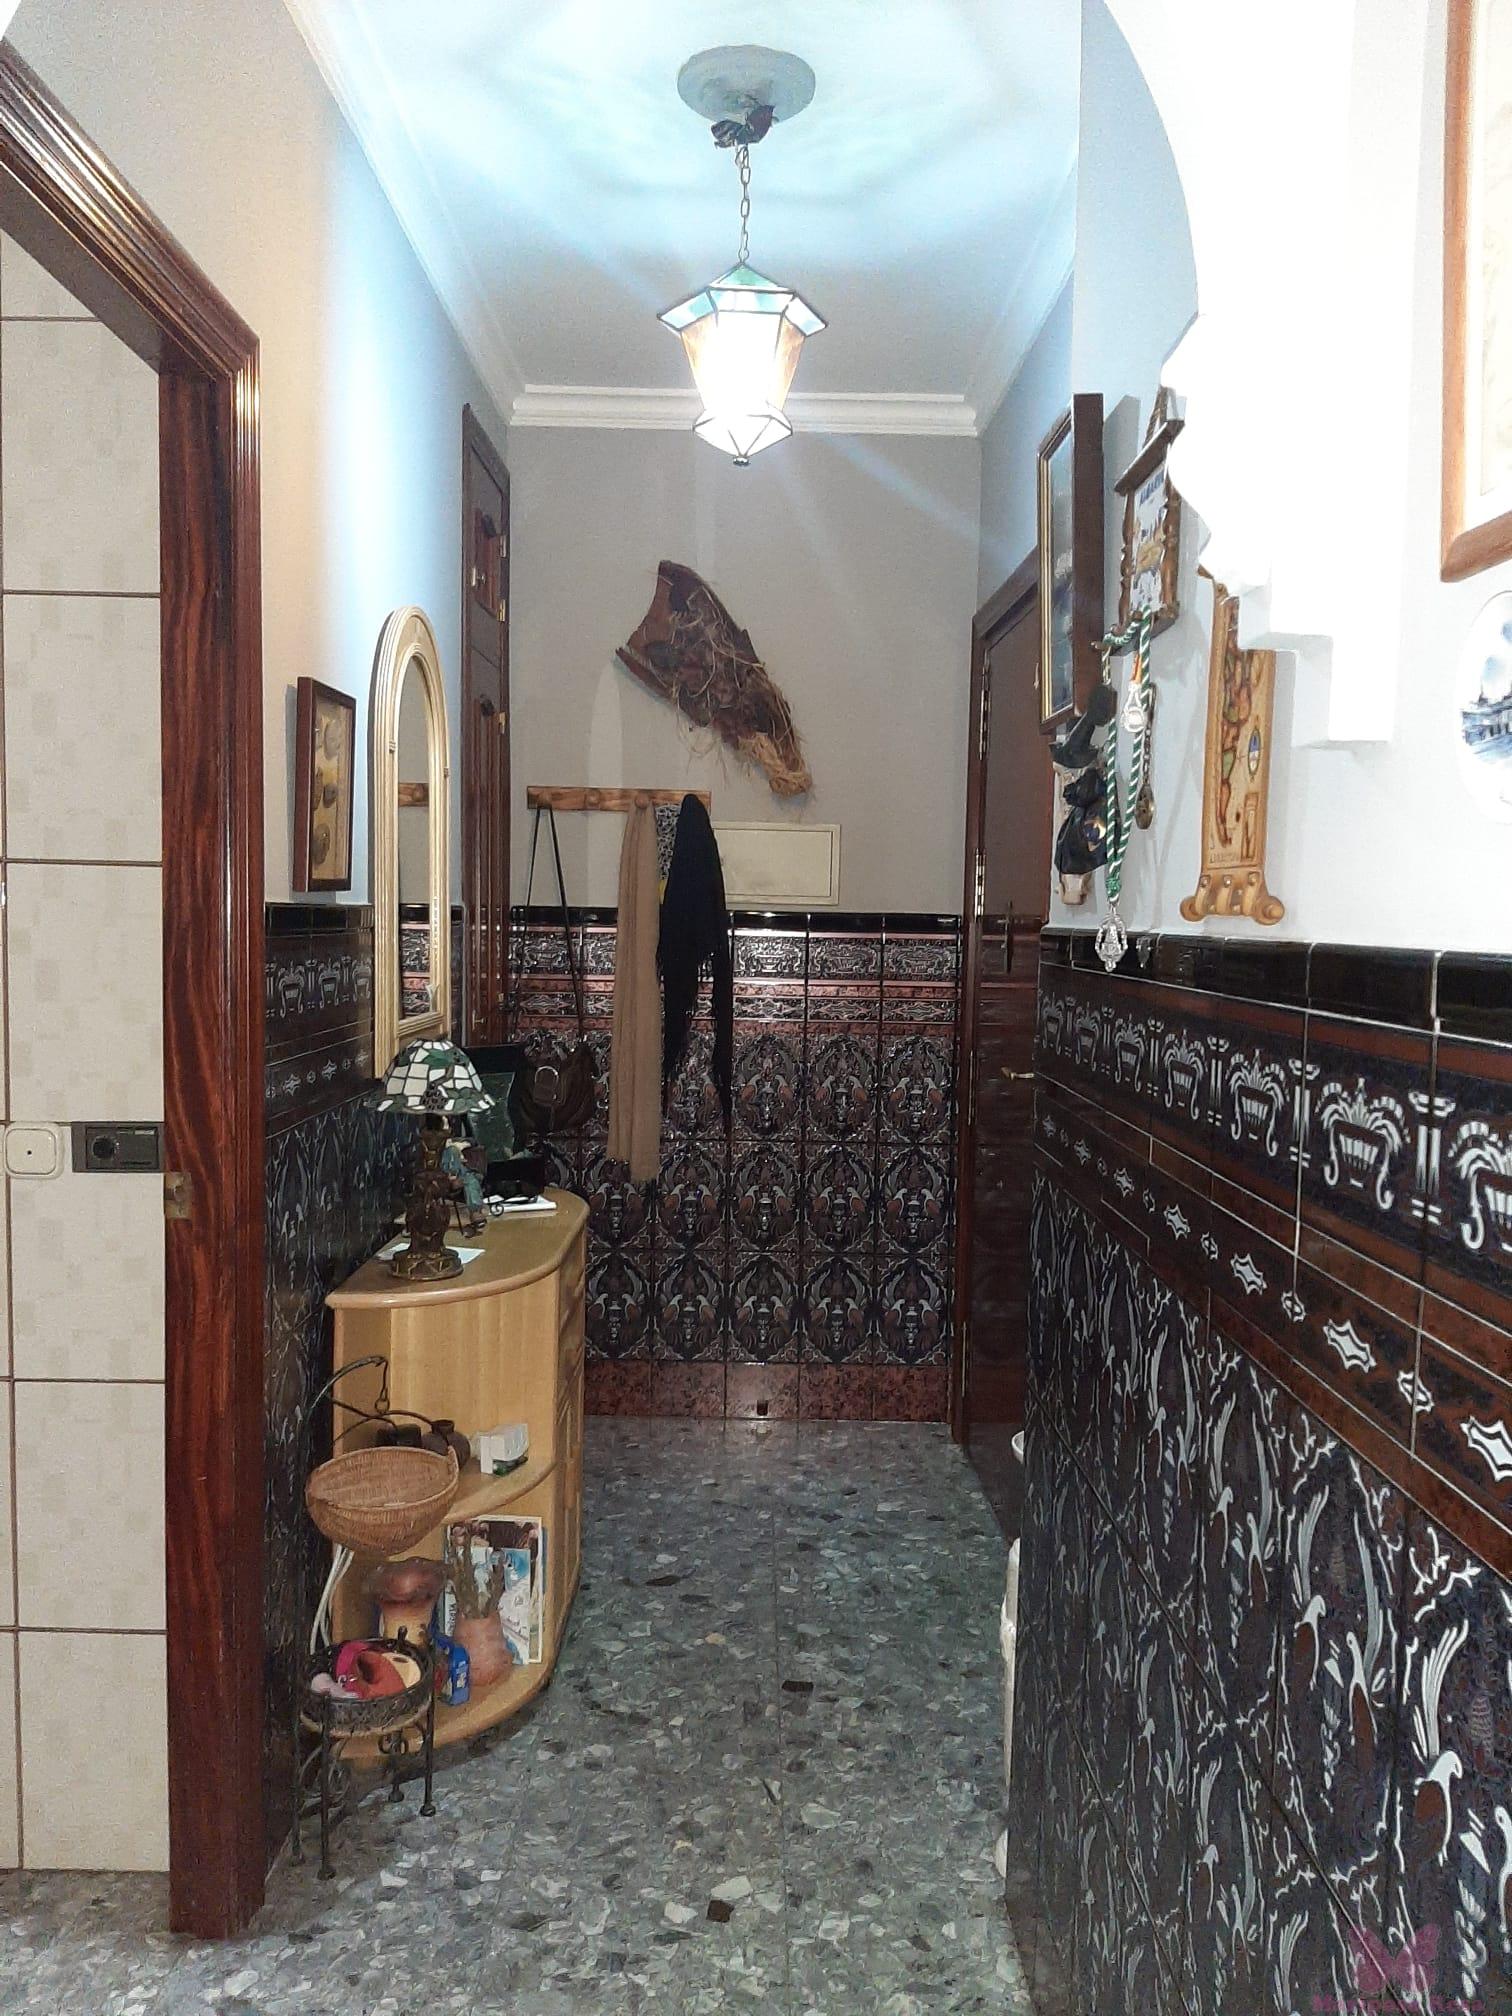 For sale of house in Chiclana de la Frontera